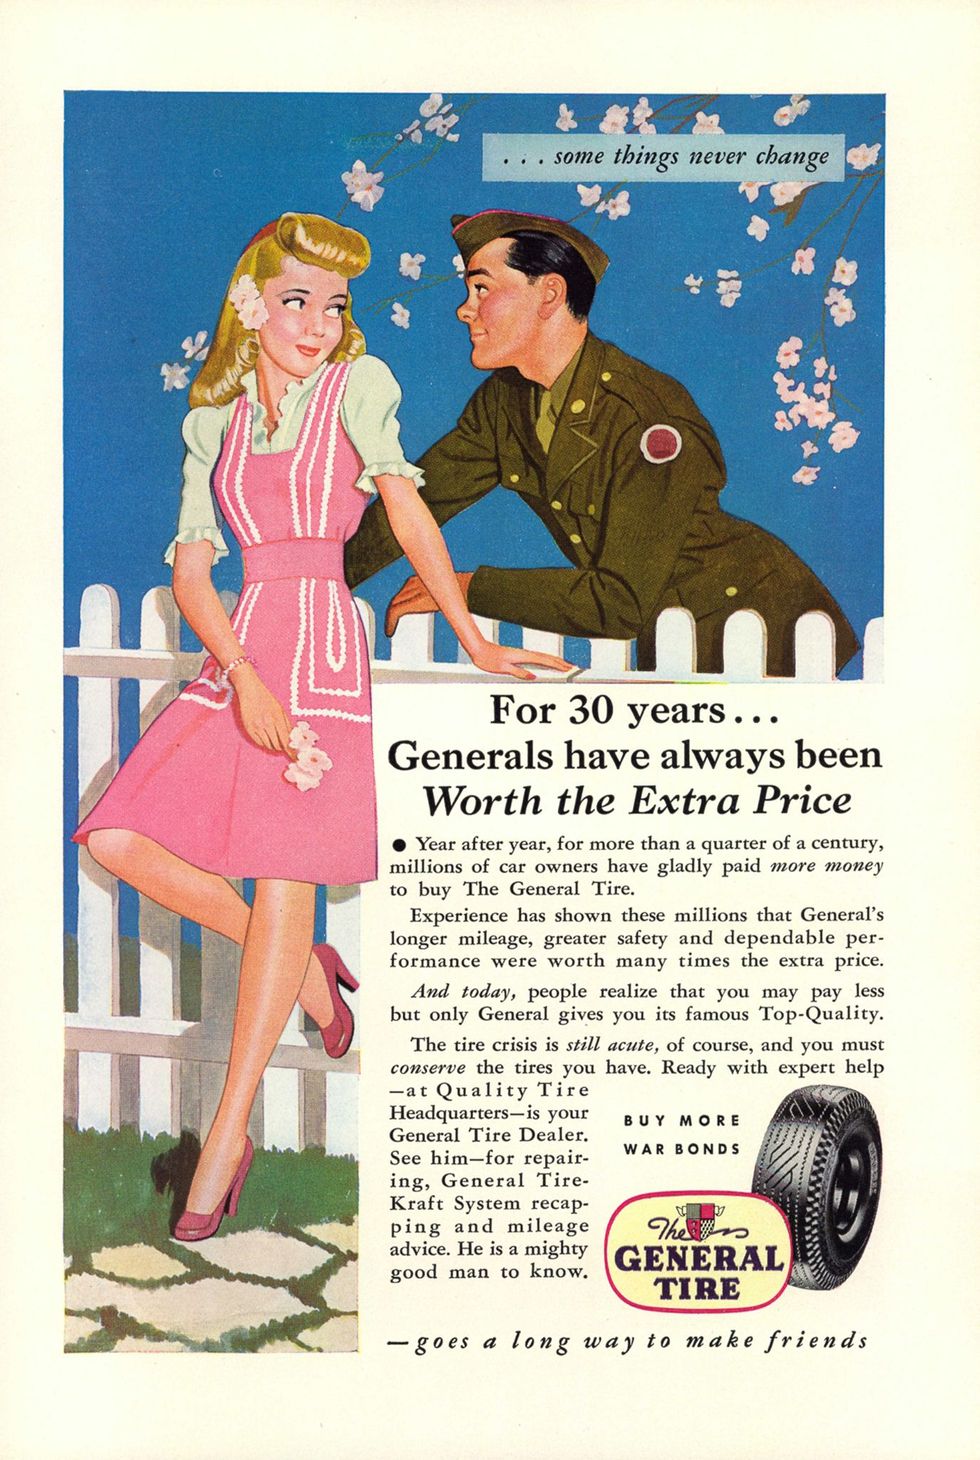 Sommige dingen veranderen nooit volgens deze advertentie uit mei 1944 in National Geographic  vermoedelijk liefde en een goede bandenkwaliteit Toch worden lezers in deze advertentie van General Tire opgeroepen geen banden van de onderneming te kopen tijdens de oorlog om rubber te besparen